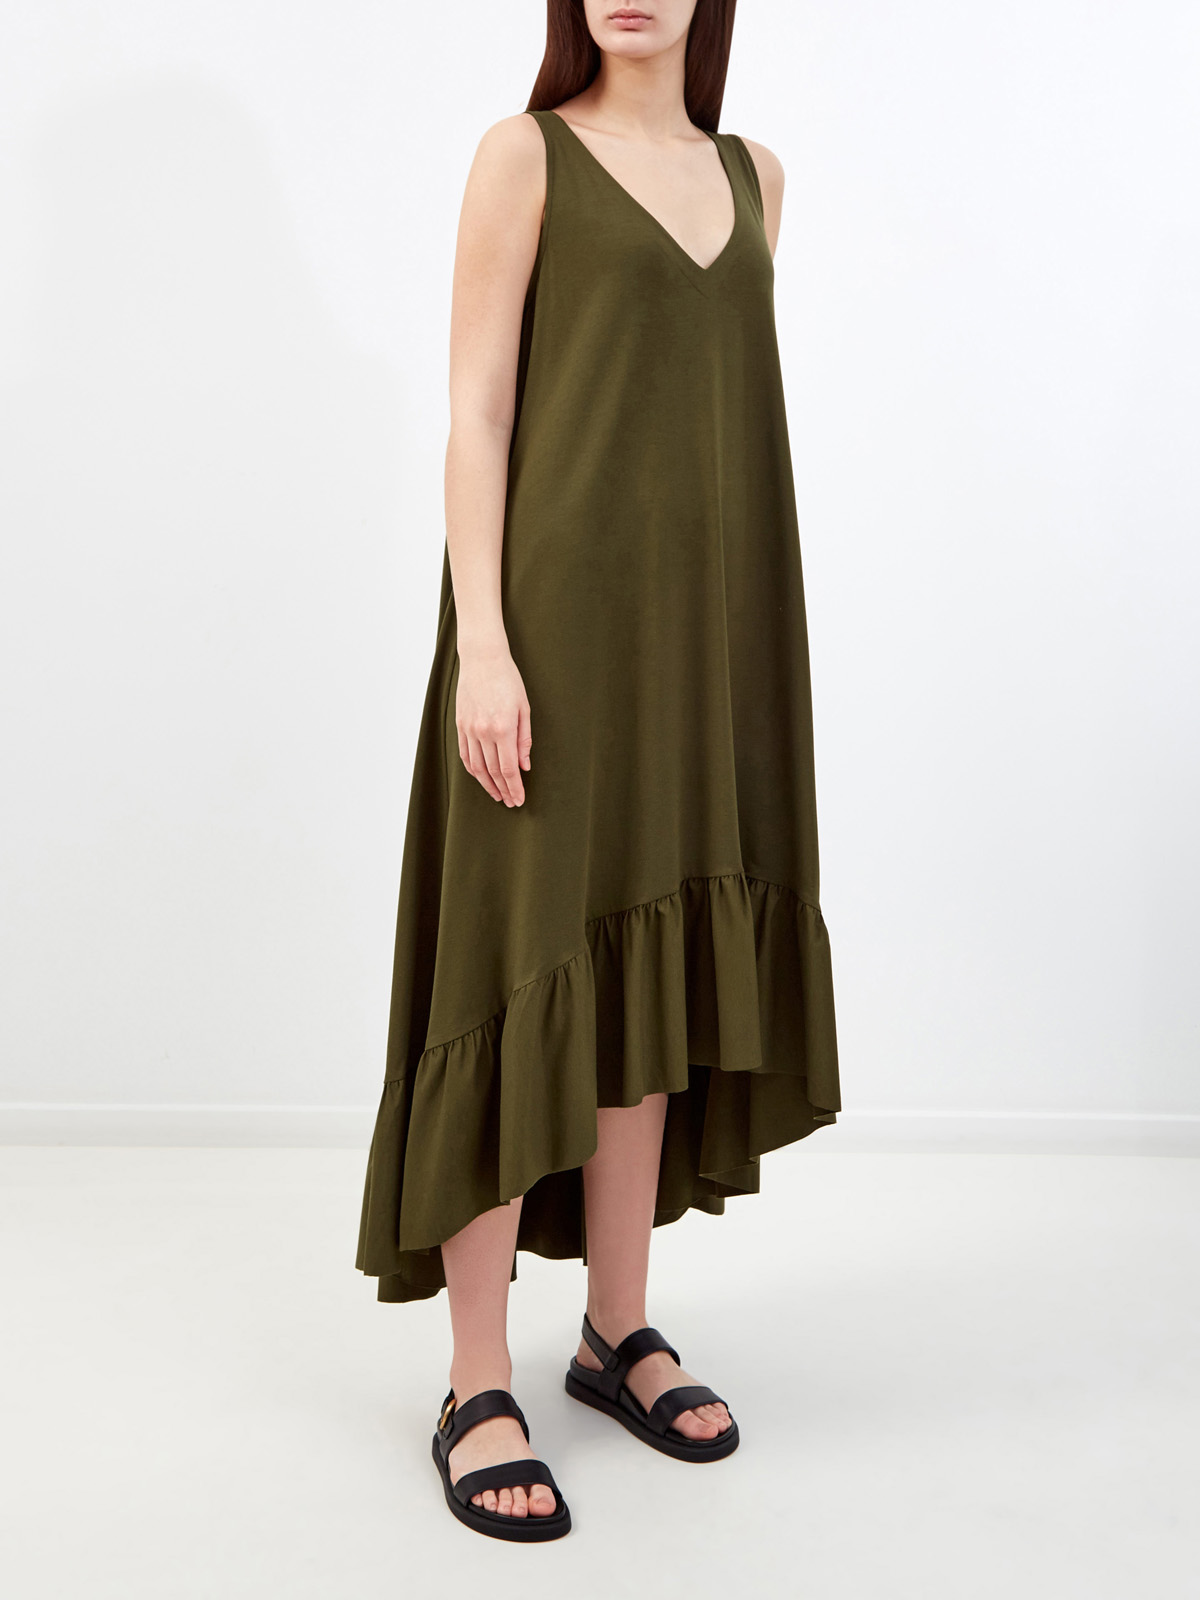 Хлопковое платье с V-образным вырезом и асимметричным подолом RE VERA, цвет зеленый, размер M;L;XL;S - фото 3